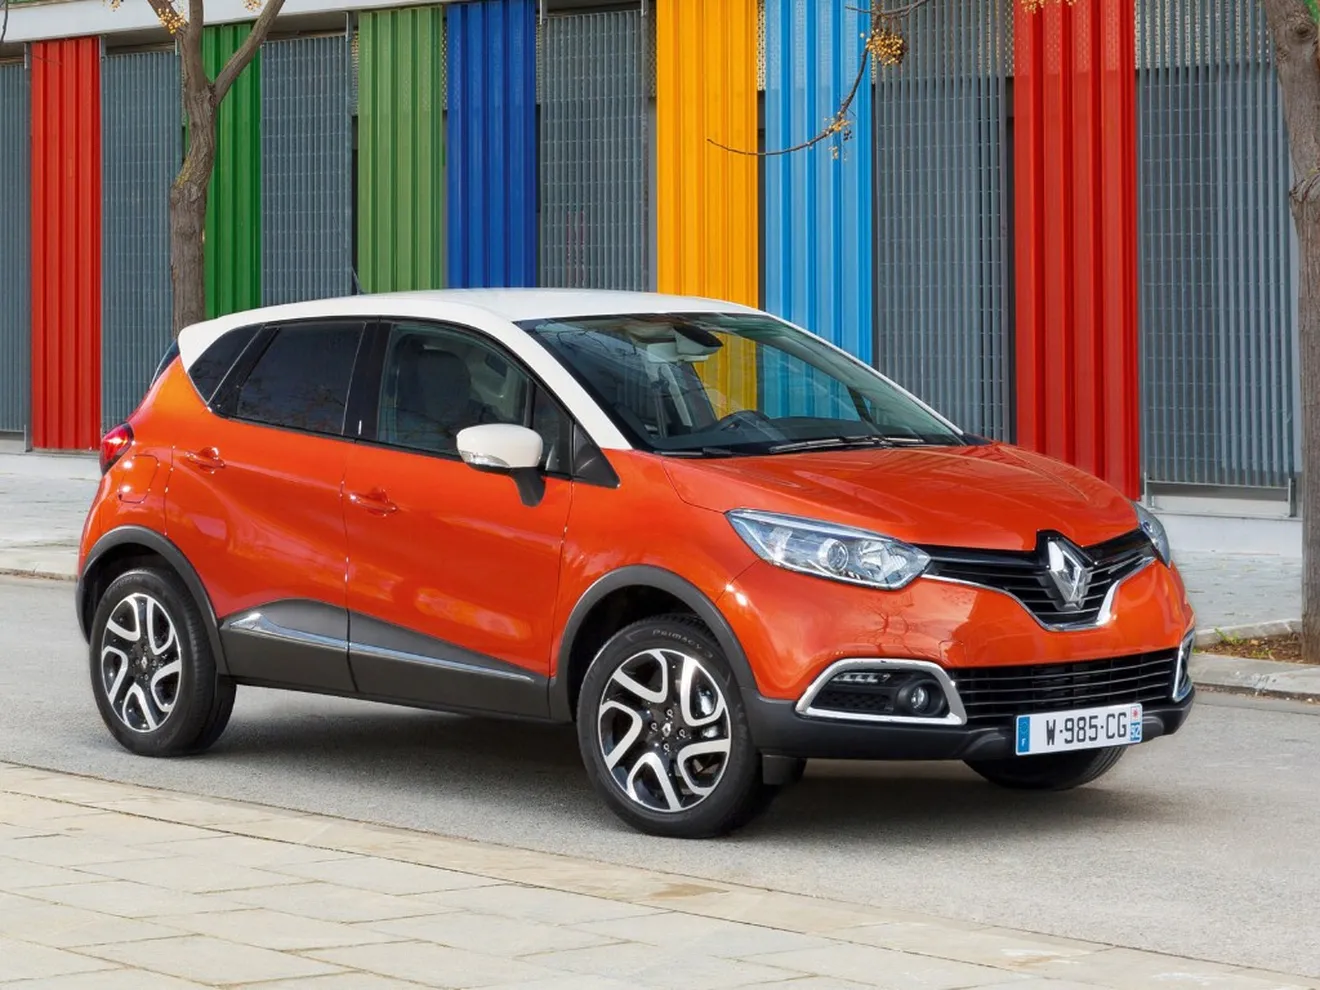 Francia - Marzo 2015: Renault mete cinco modelos en el Top 10